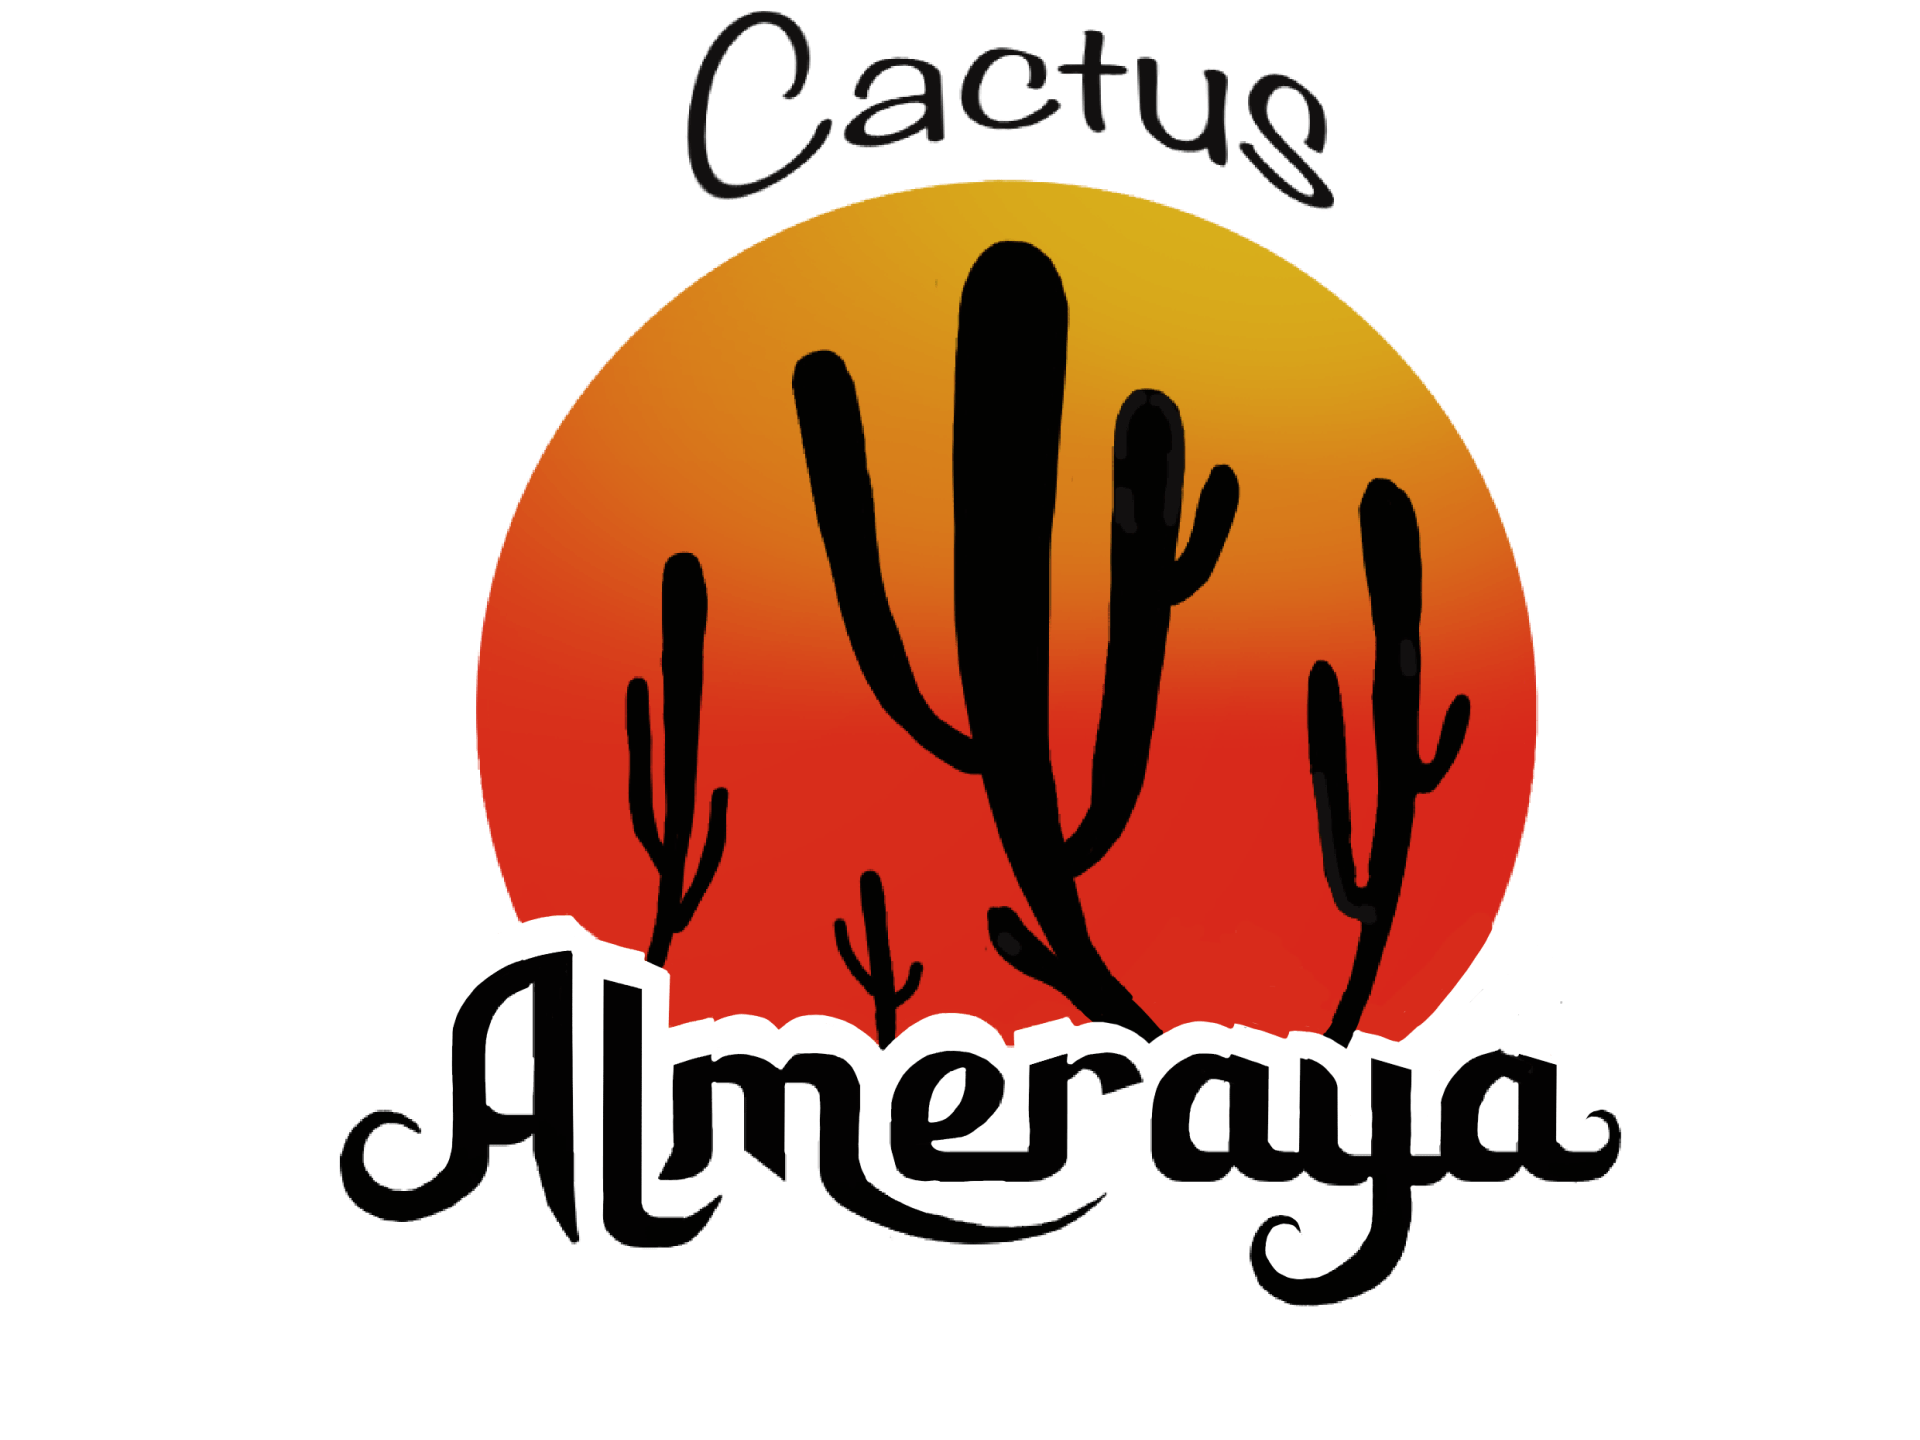 Cactus Almeraya, Venta de cactus y suculentas raros y de colección Online, Vivero de Cactus Almería, Comprar cactus y suculentas Online